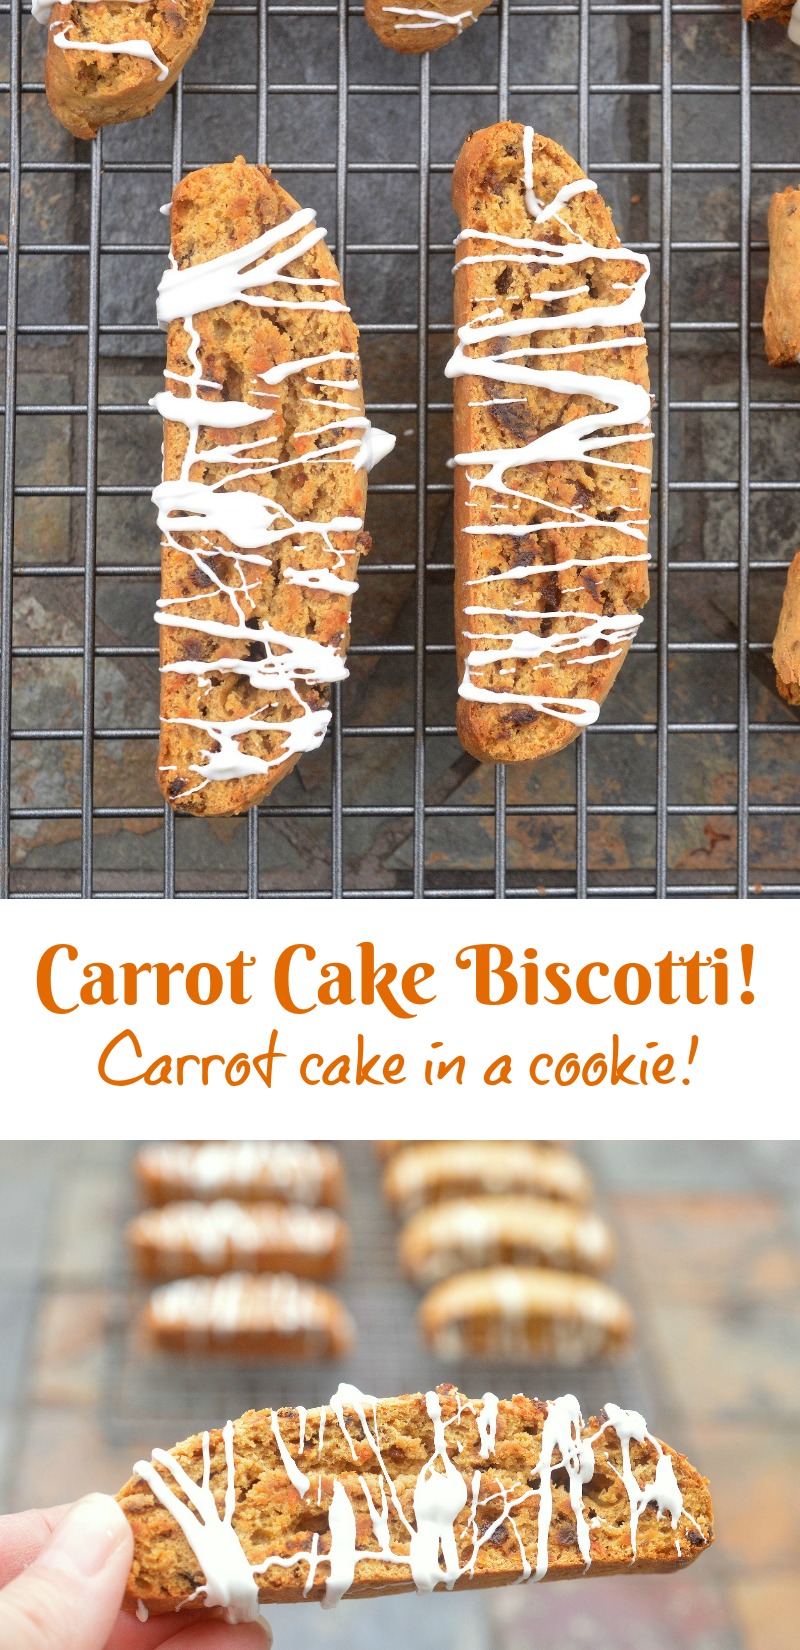 Carrot Cake Biscotti recipe